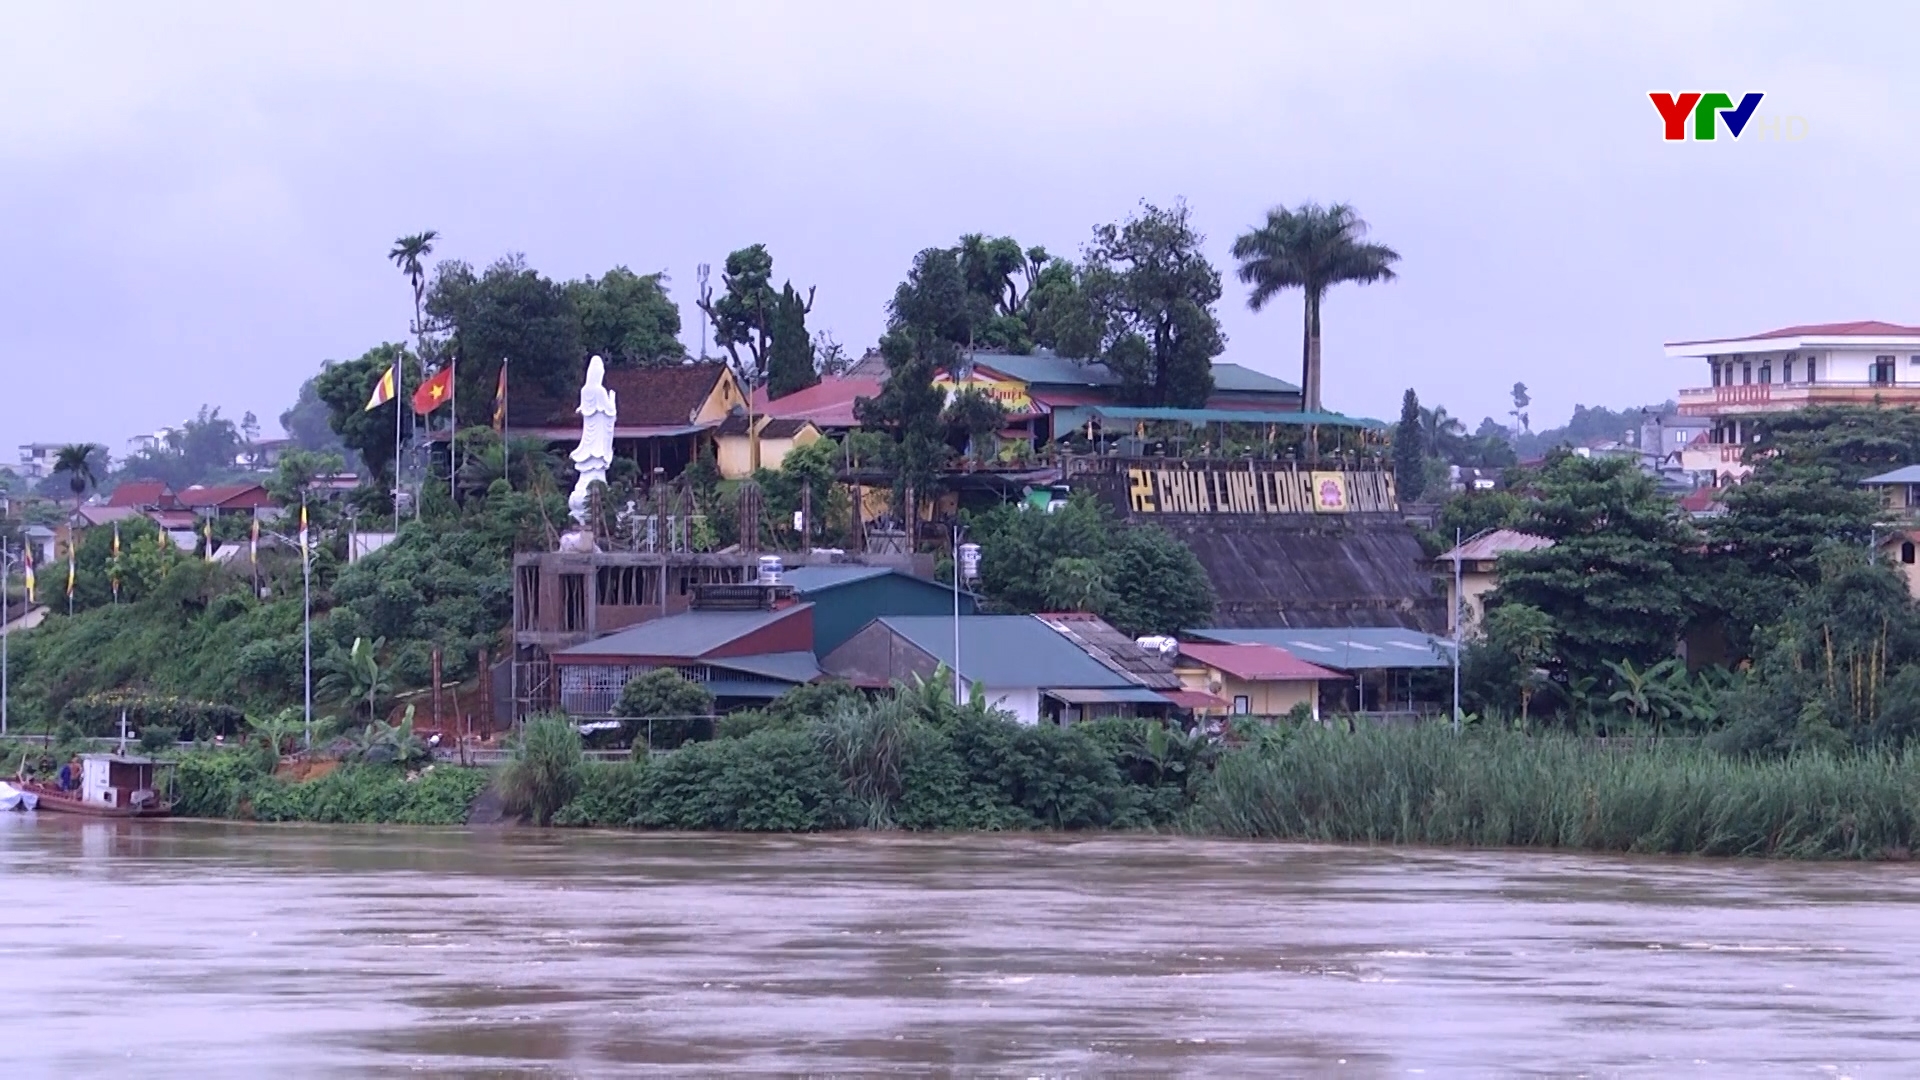 Lũ sông Thao tại Yên Bái lên cao cảnh báo lũ quét và sạt lở đất